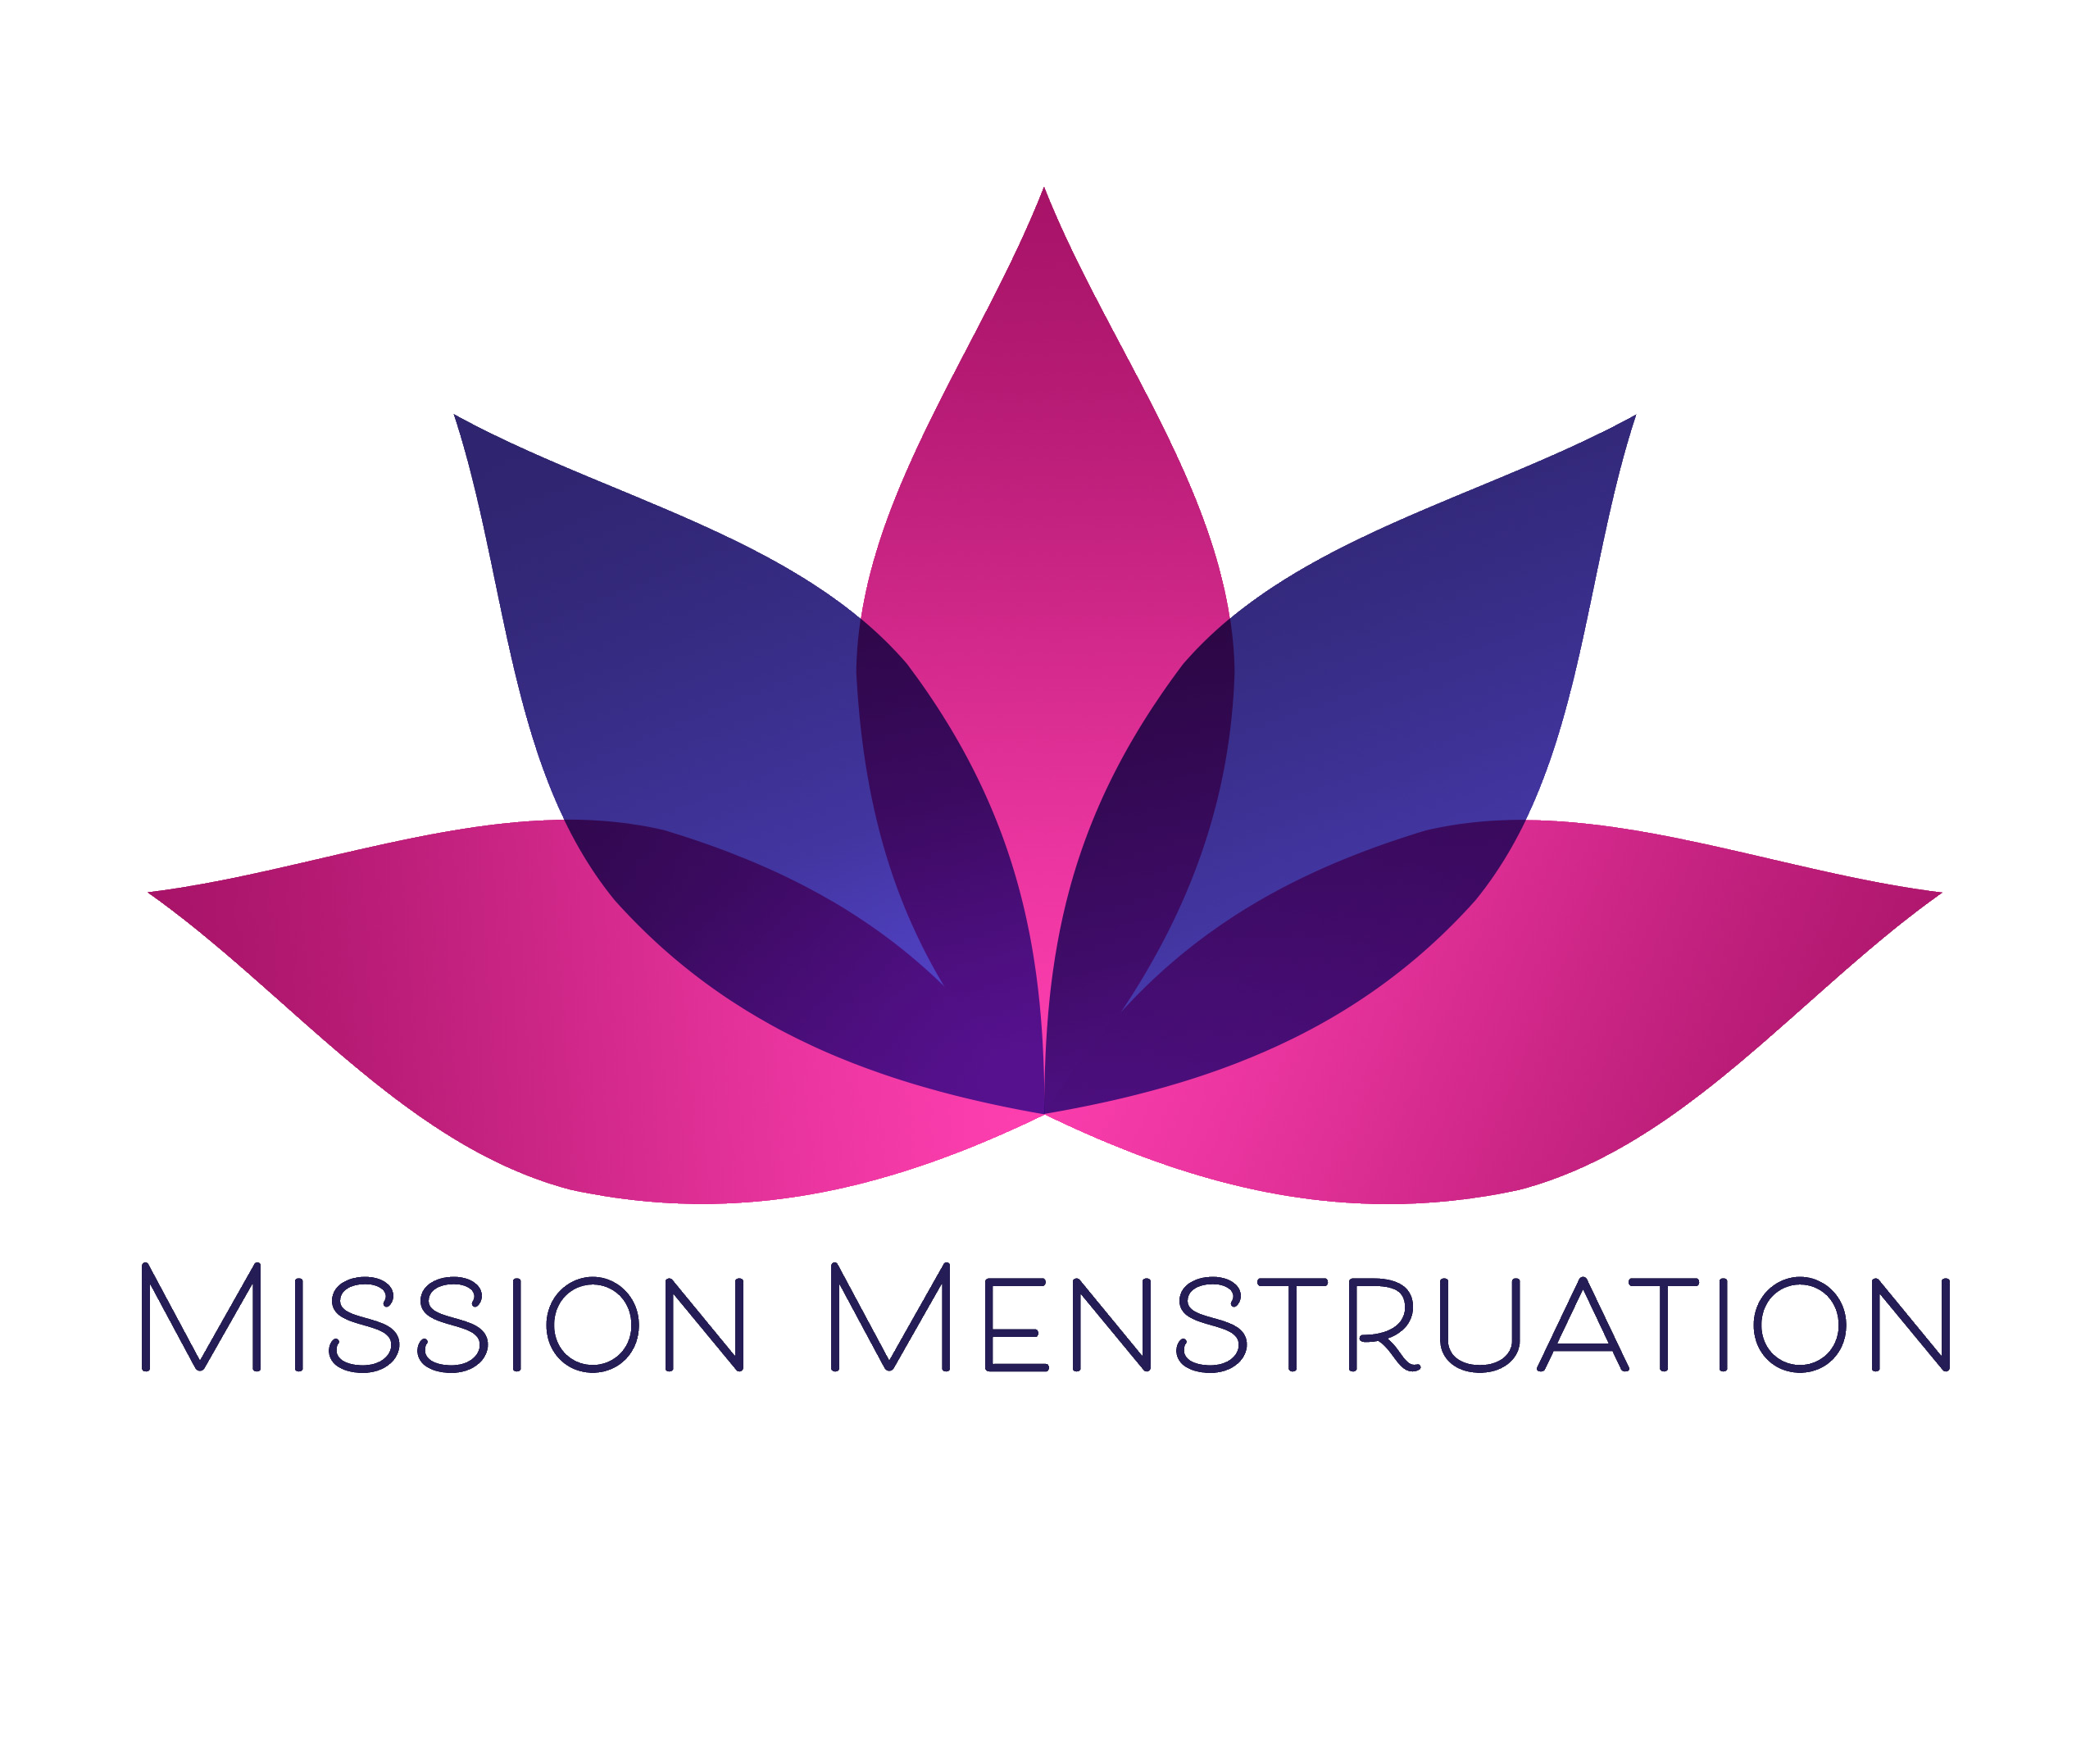 Mission Menstruation logo